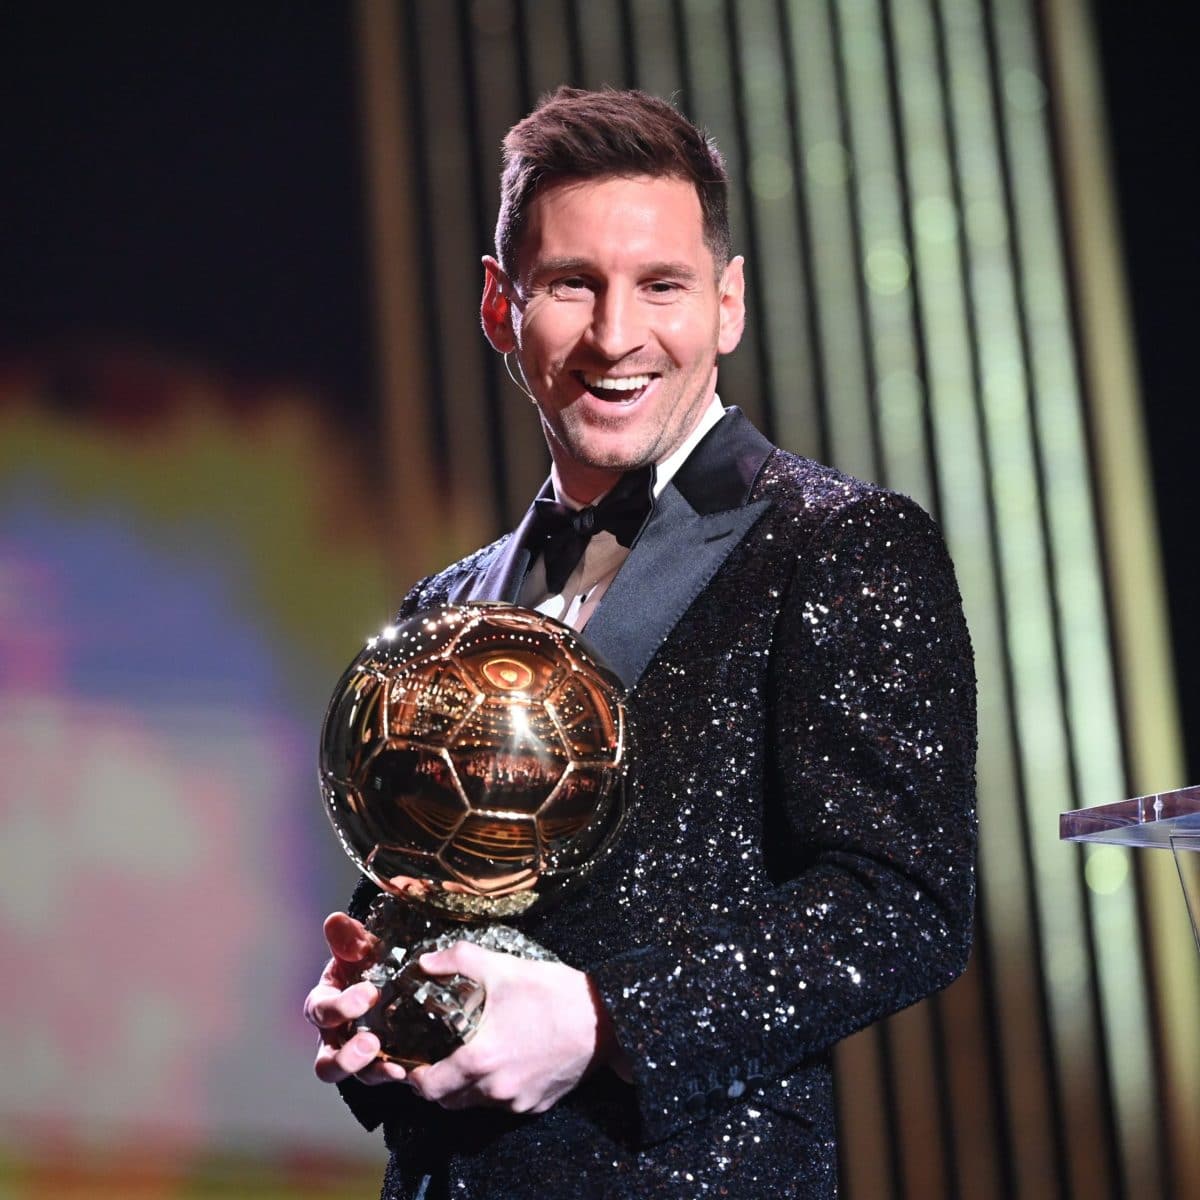 Le footballeur Lionel Messi vainqueur, pour la septième fois du Ballon d’or !